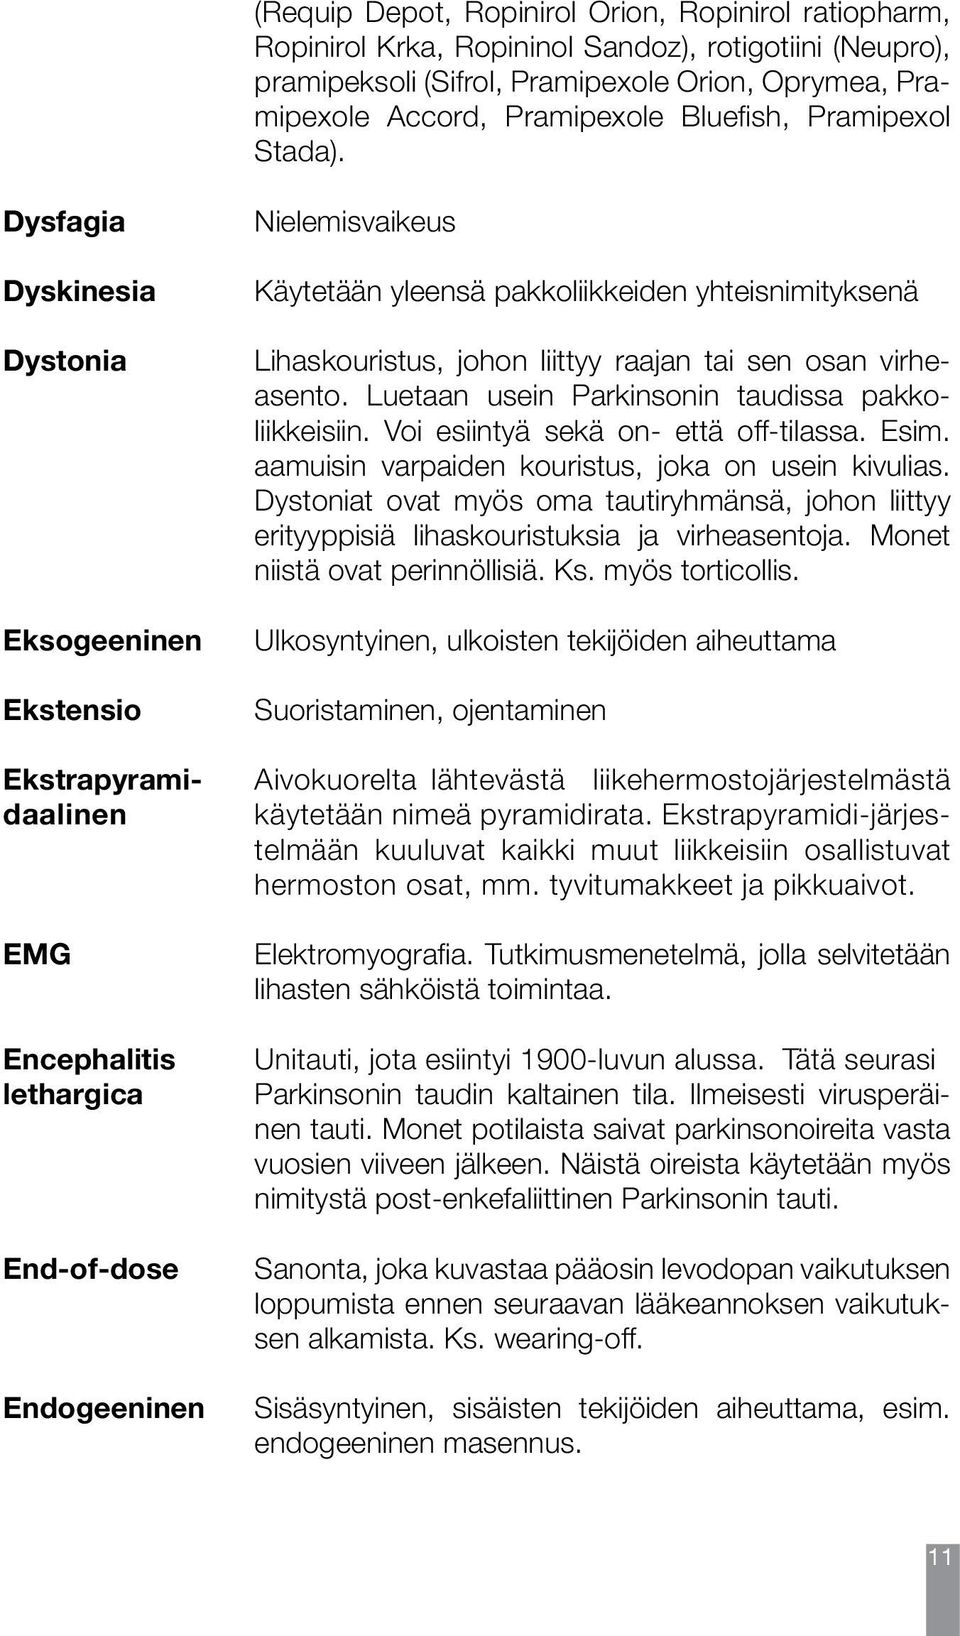 Dysfagia Dyskinesia Dystonia Eksogeeninen Ekstensio Ekstrapyramidaalinen EMG Encephalitis lethargica End-of-dose Endogeeninen Nielemisvaikeus Käytetään yleensä pakkoliikkeiden yhteisnimityksenä